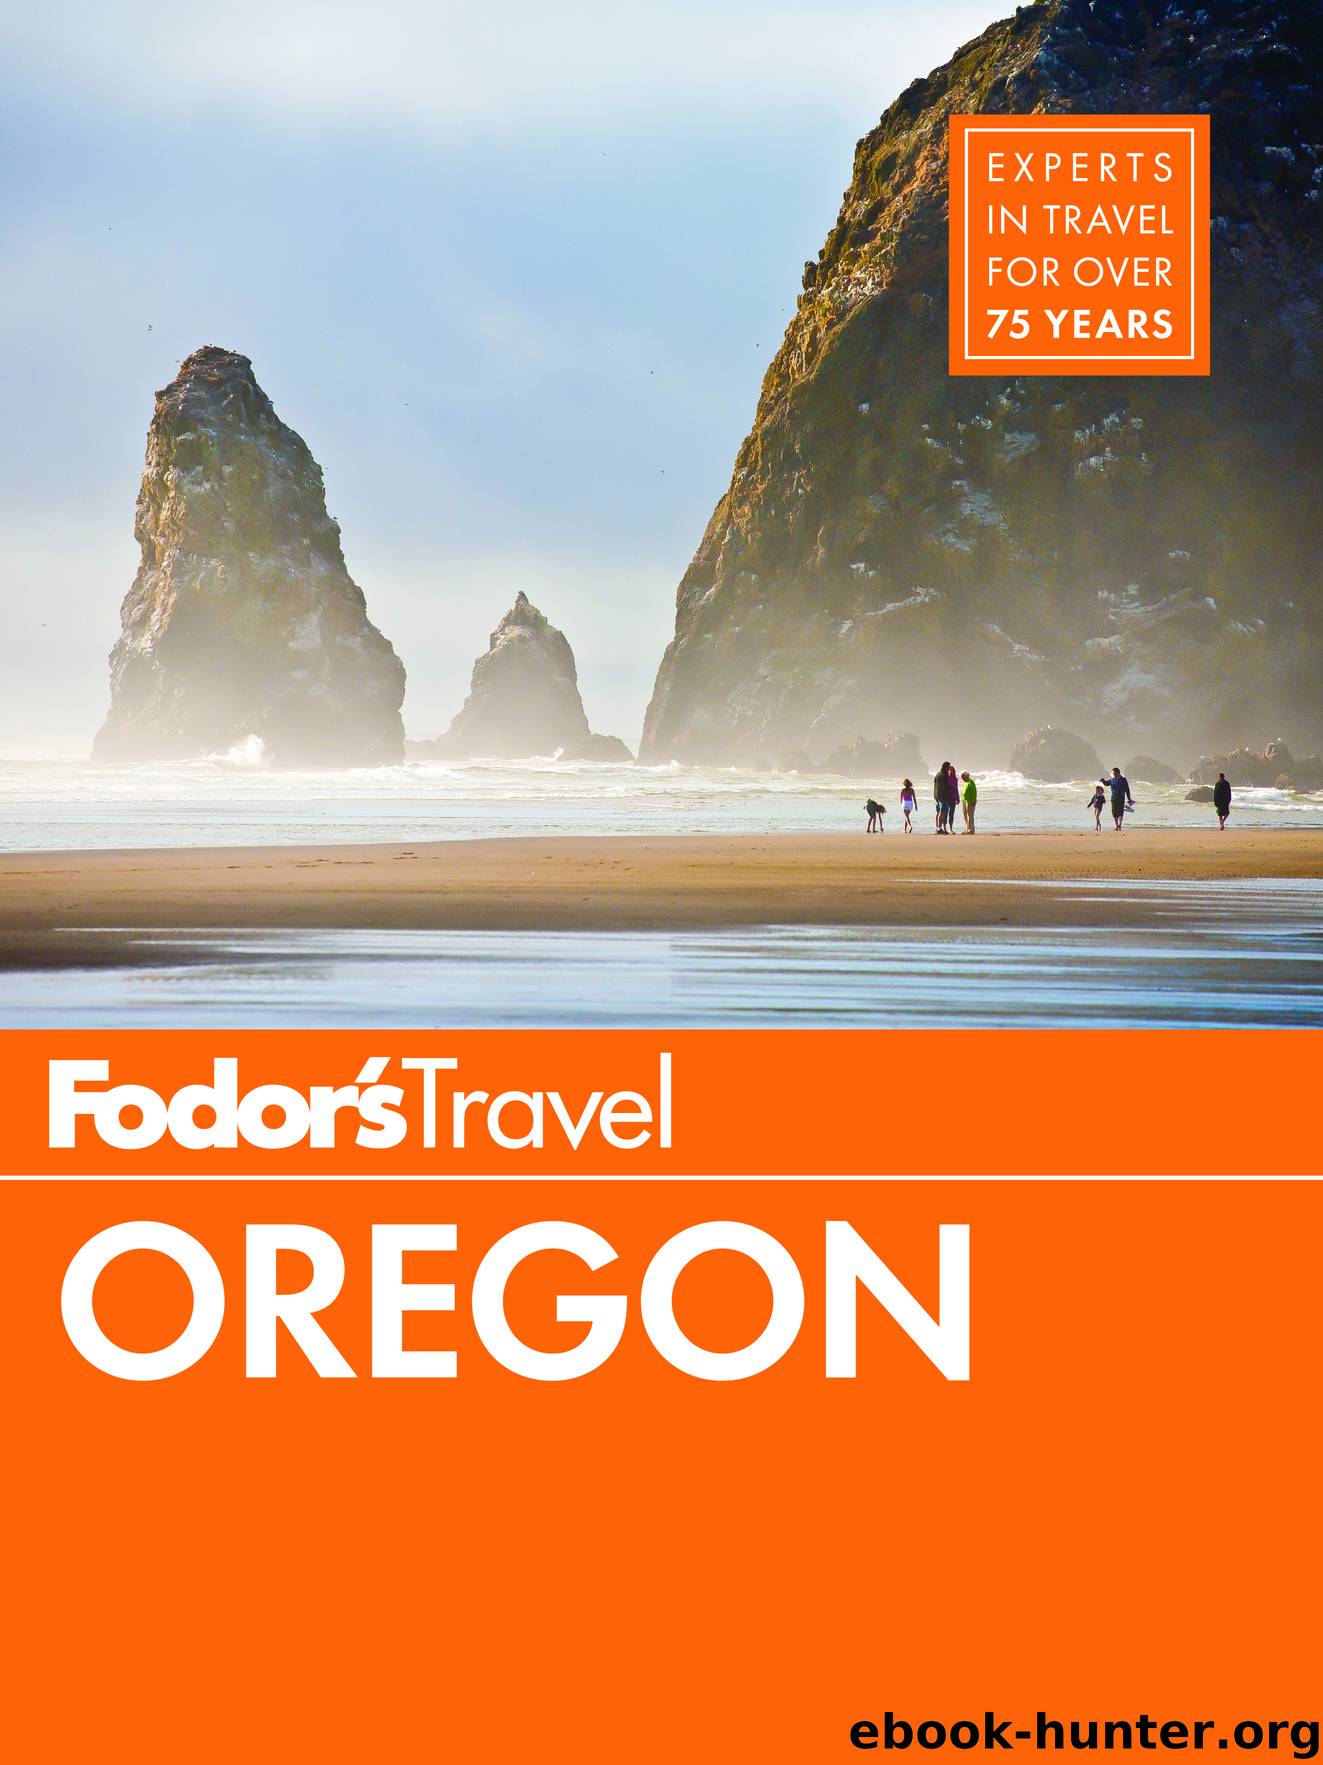 Fodor's Oregon by Fodor's